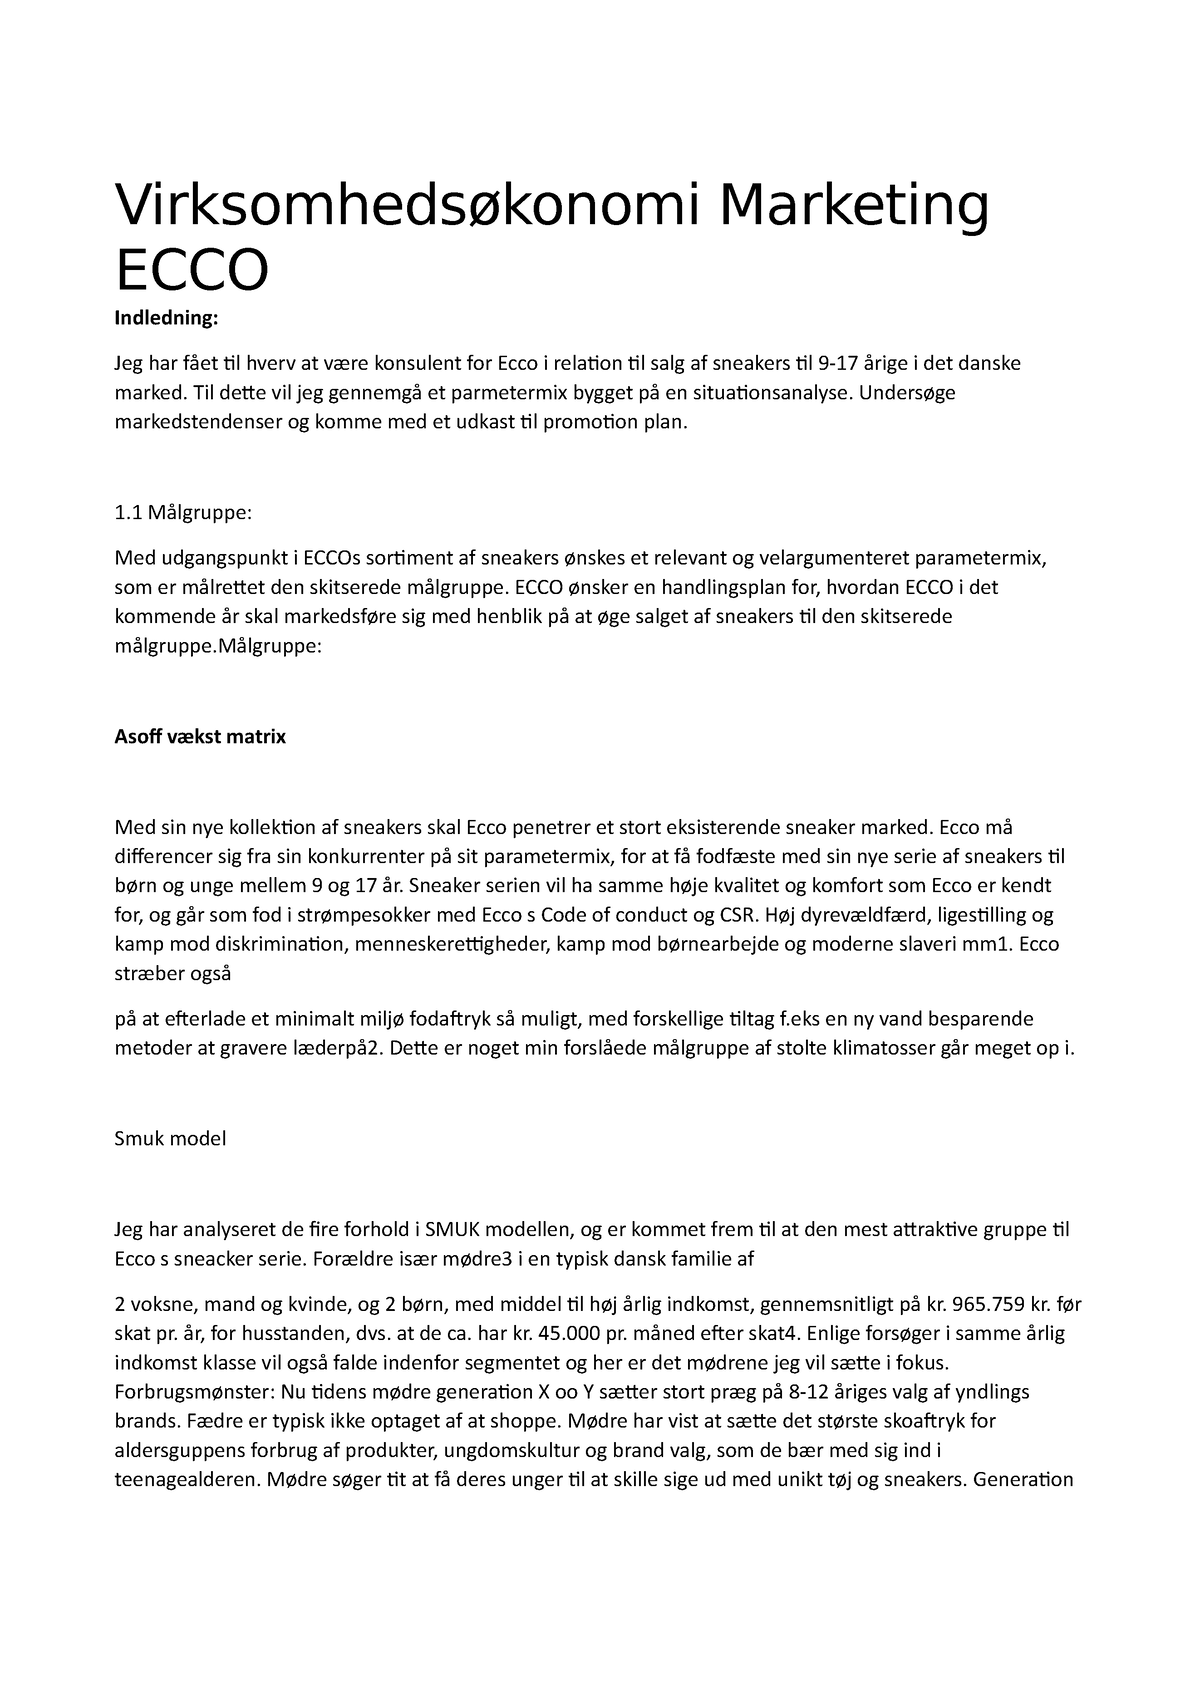 Virksomhedsøkonomi ECCO Marketing Indledning: Jeg har fået til - Studocu